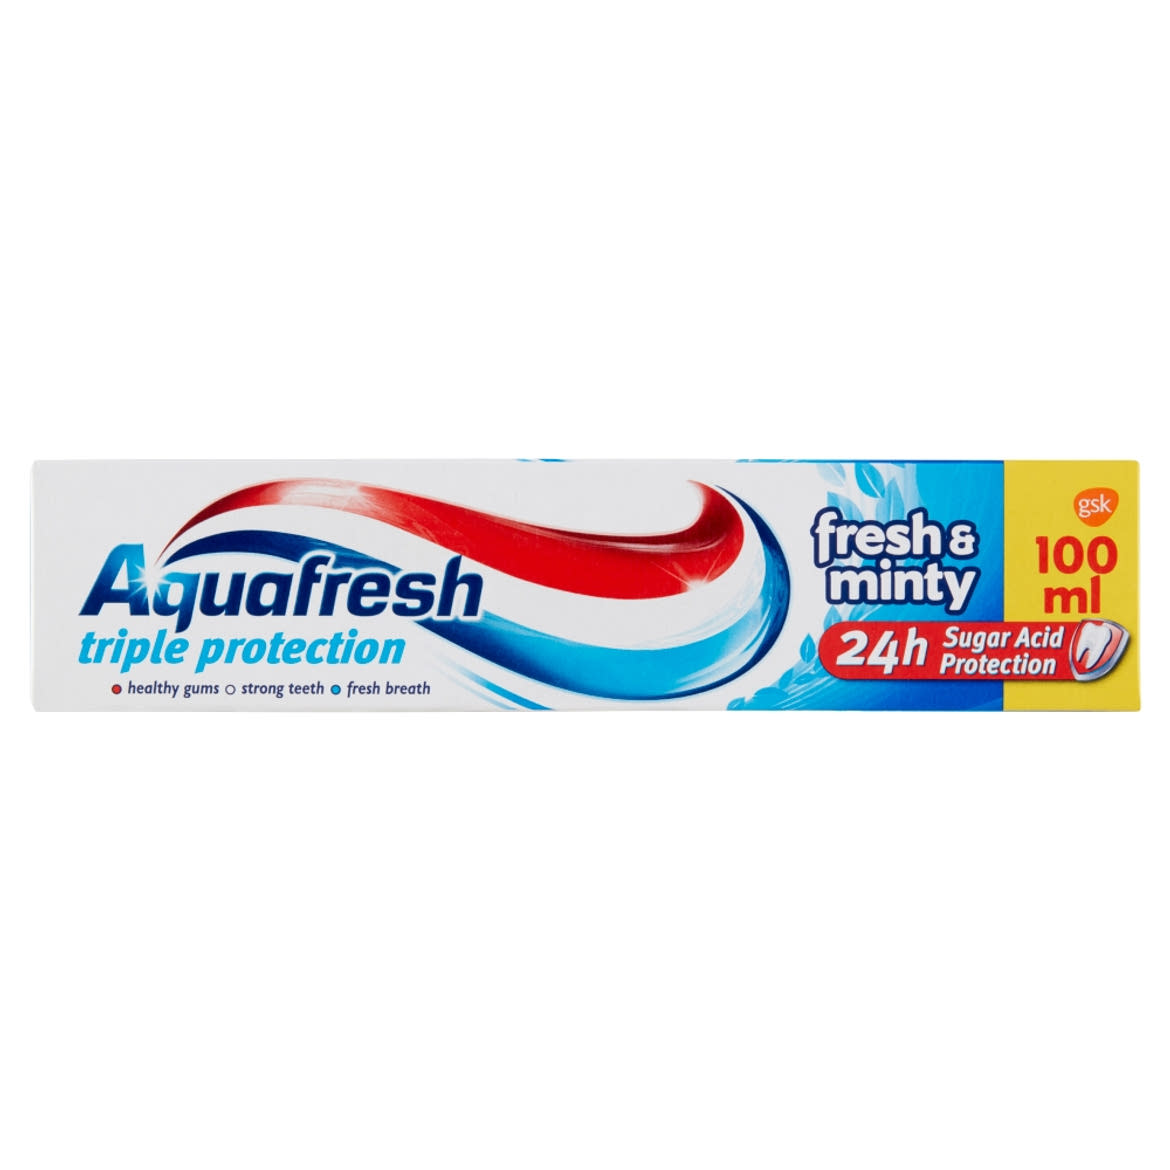 Aquafresh Fresh & Minty fogkrém